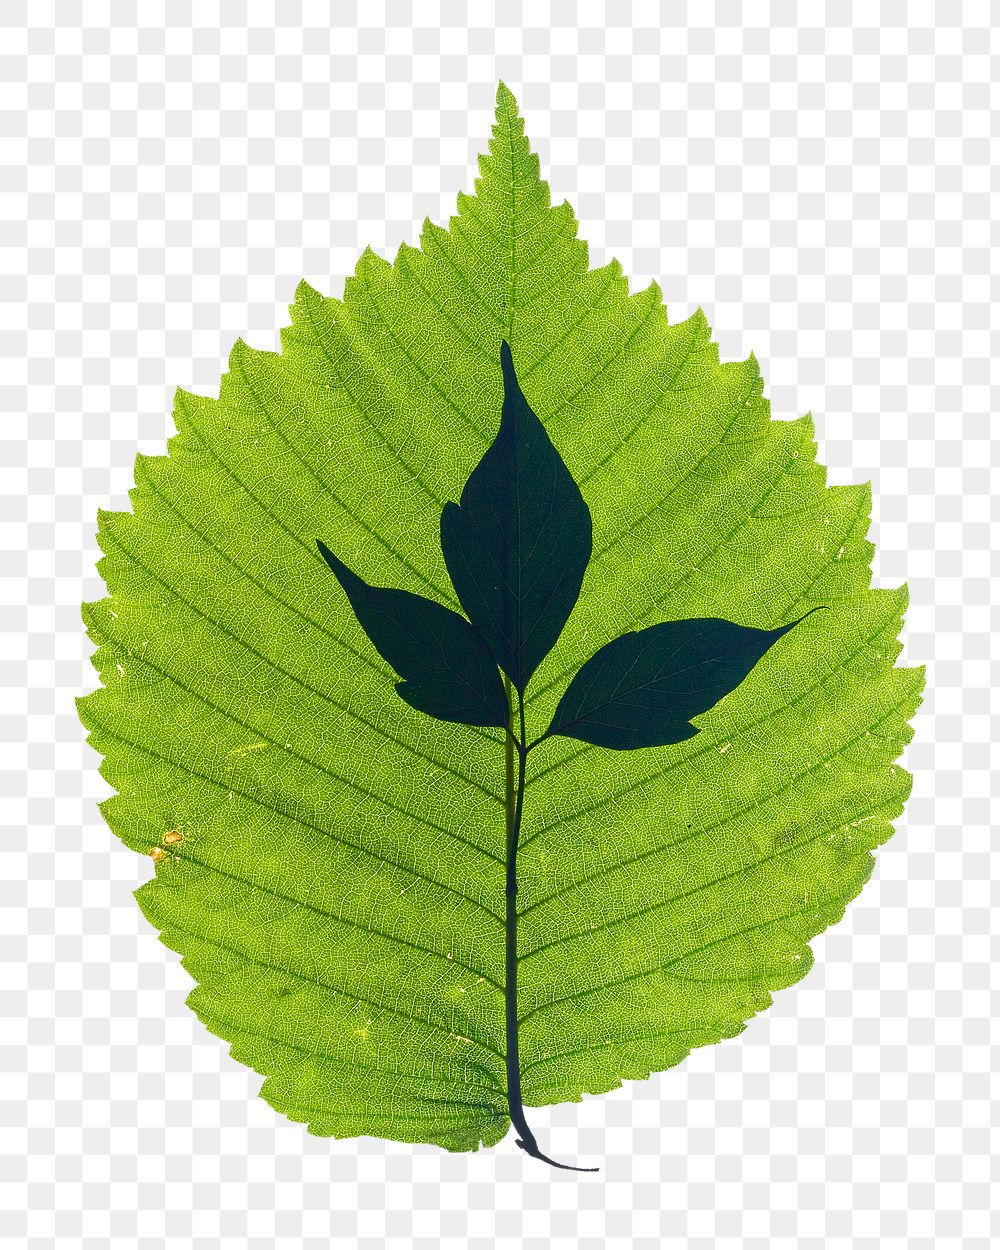 Leaf png sticker, transparent background